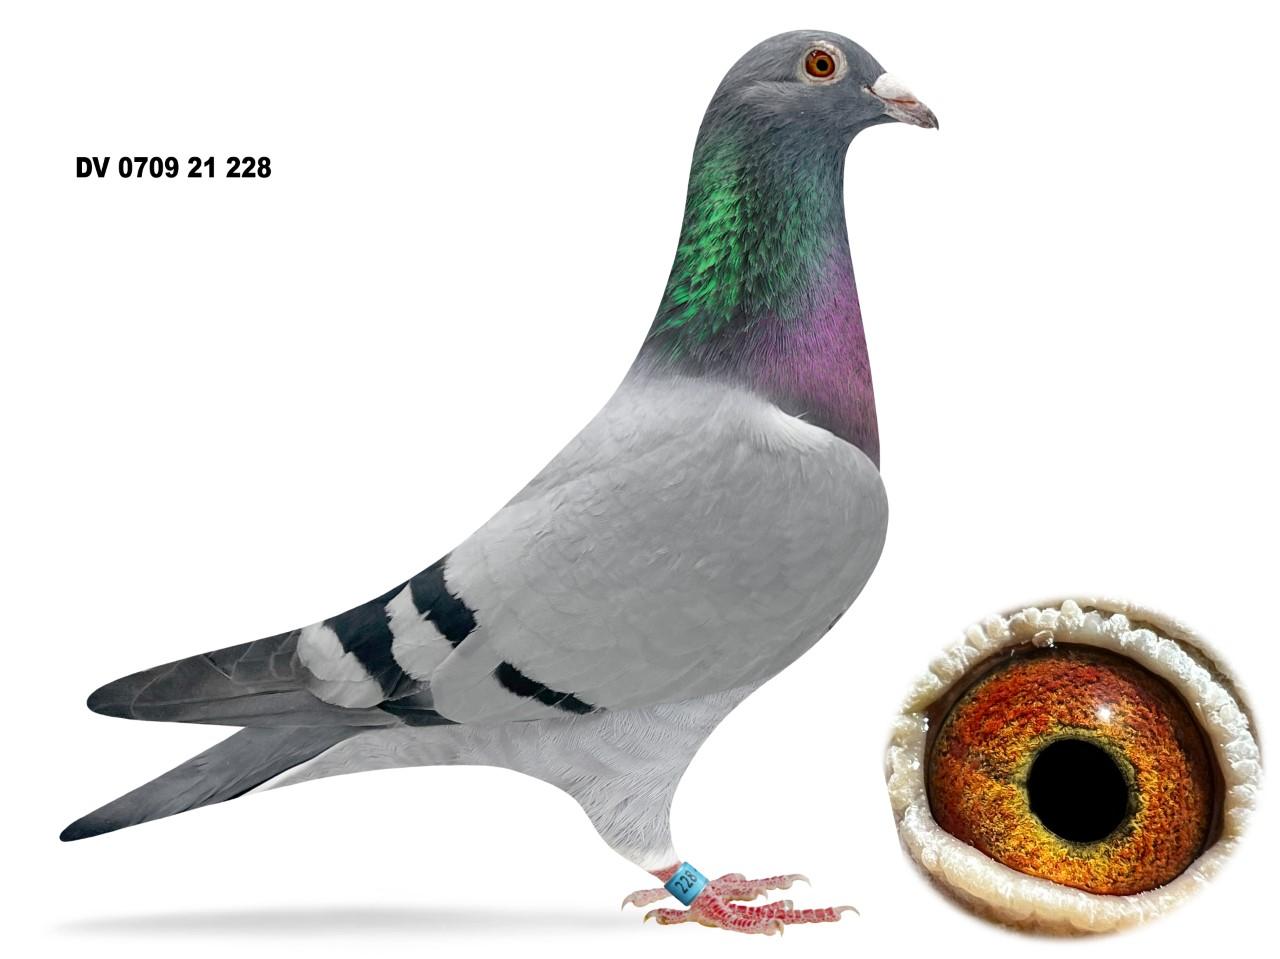 DV 0709 21 228 Bacelona Pigeons!